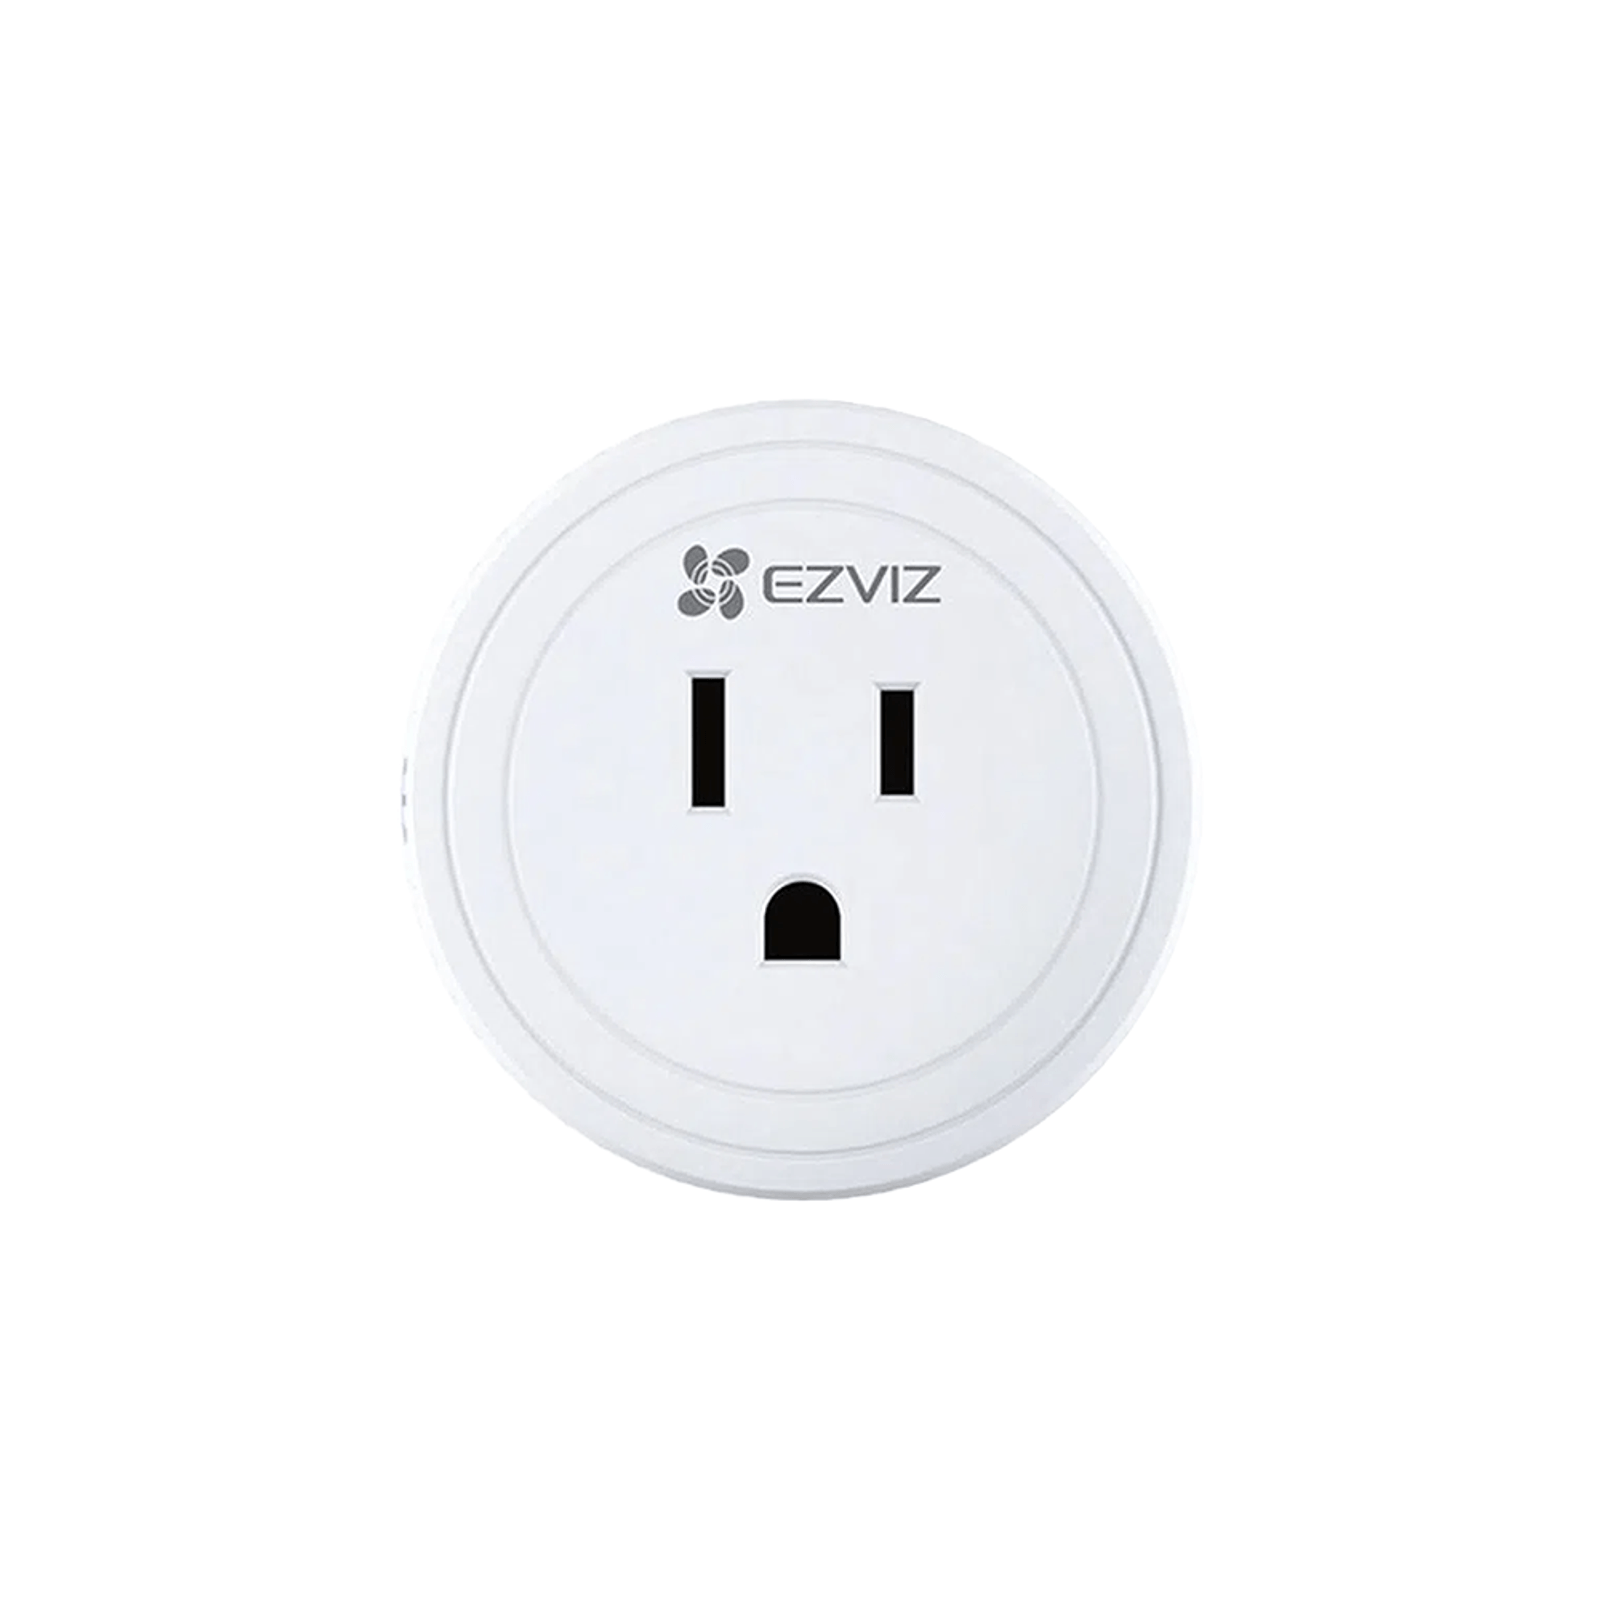 EZVIZ T30 Smart Plug Enchufe Inteligente compatible con Alexa y Google Assistant